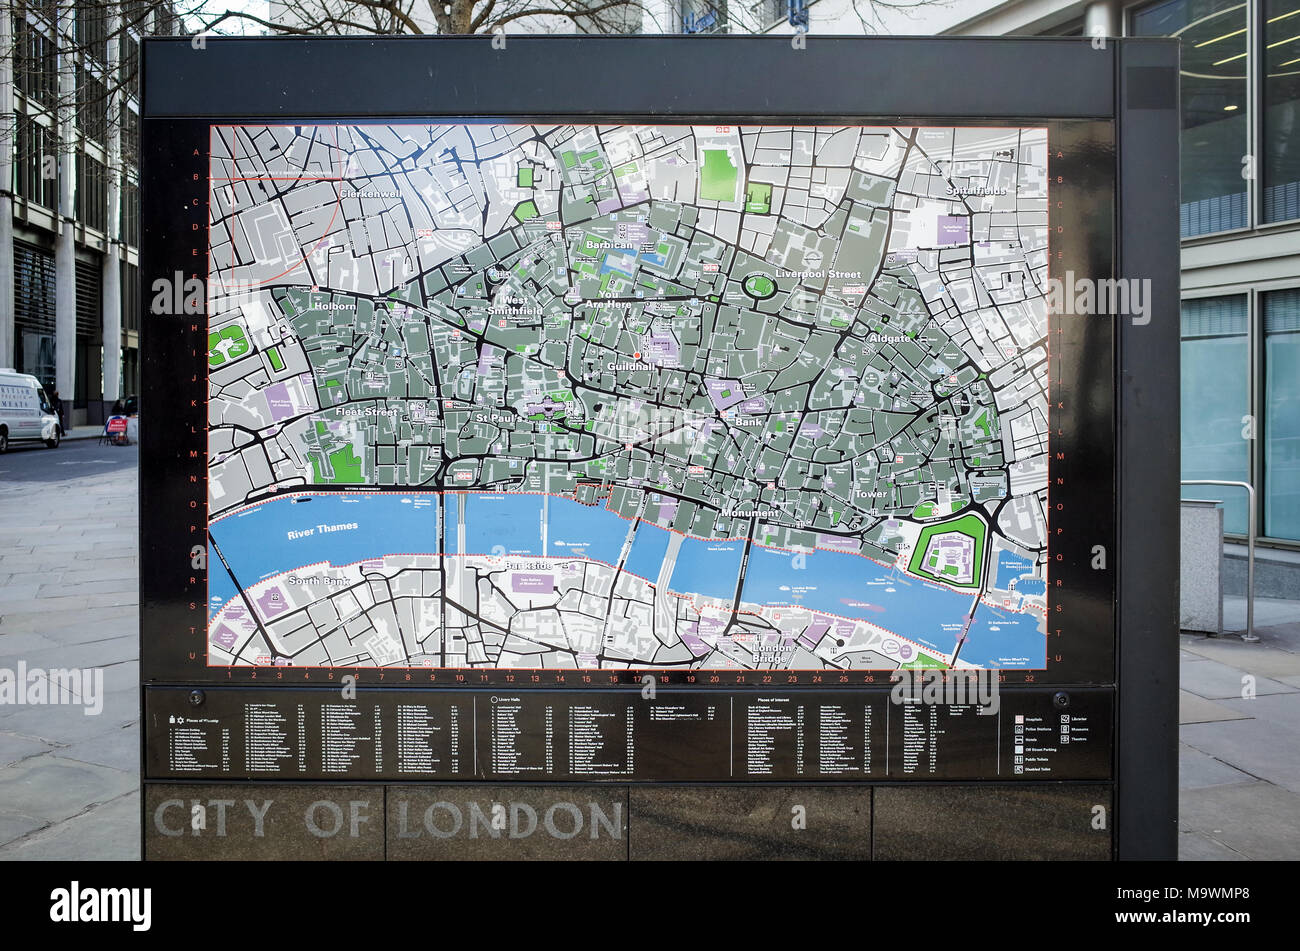 Ville de London Street Map - grande carte du quartier financier de Londres sur Gresham Street près de la Guildhall Banque D'Images